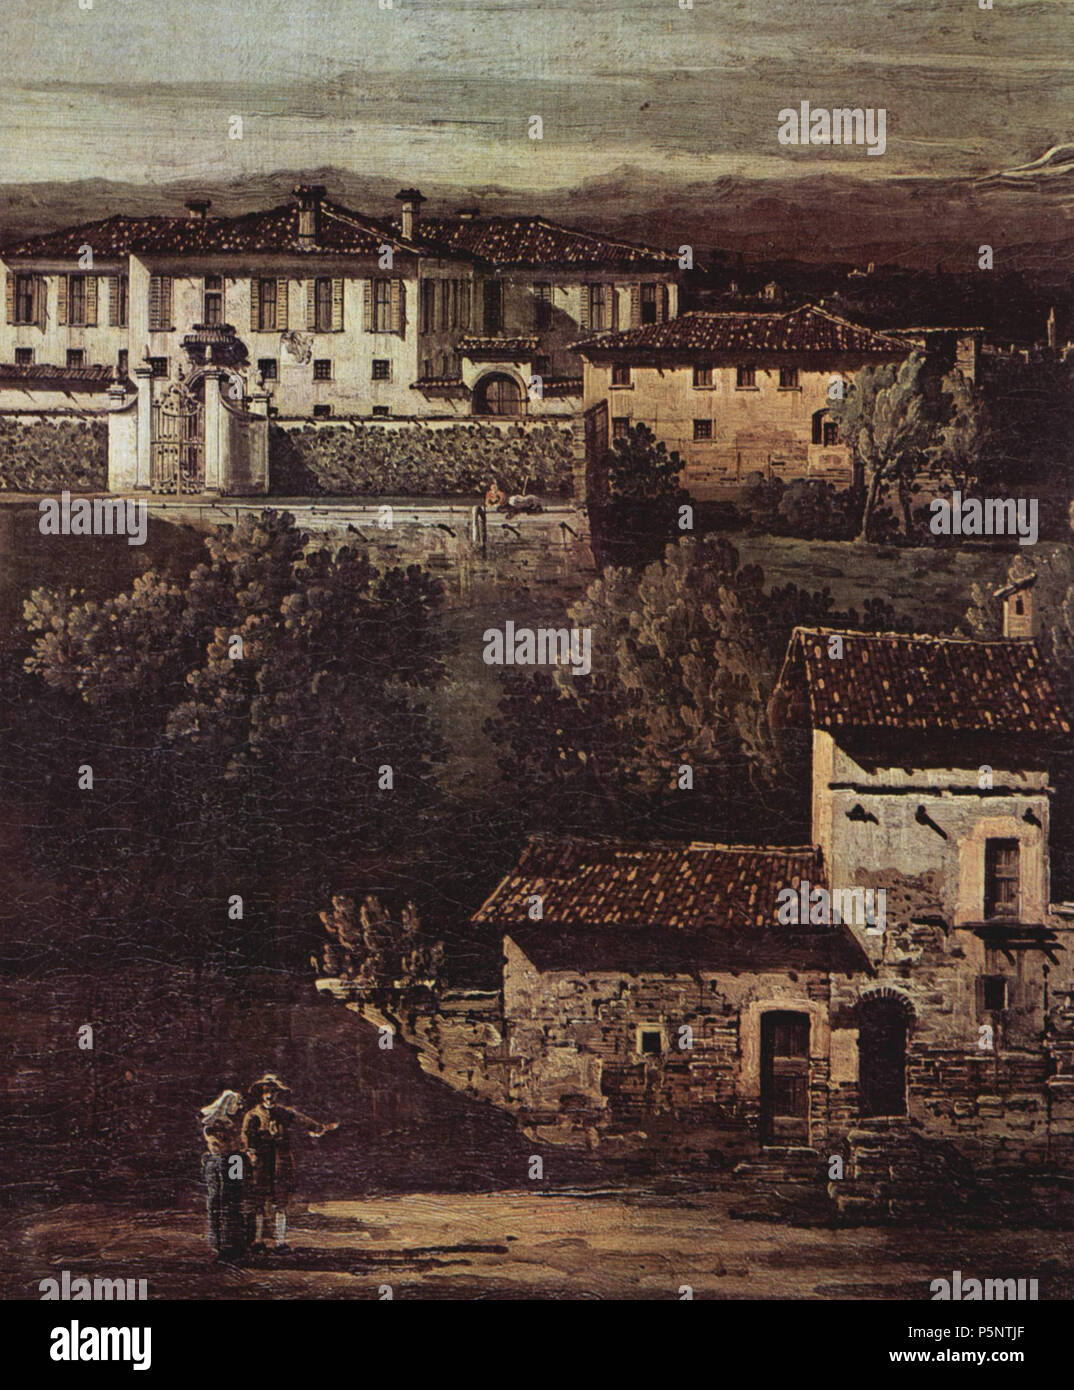 Deutsch: Das Dorf Gazzada, Blick von Süd-Ost auf die Villa Melzi d'Eril detail  1744. N/A 185 Canaletto (I) 051 Stock Photo